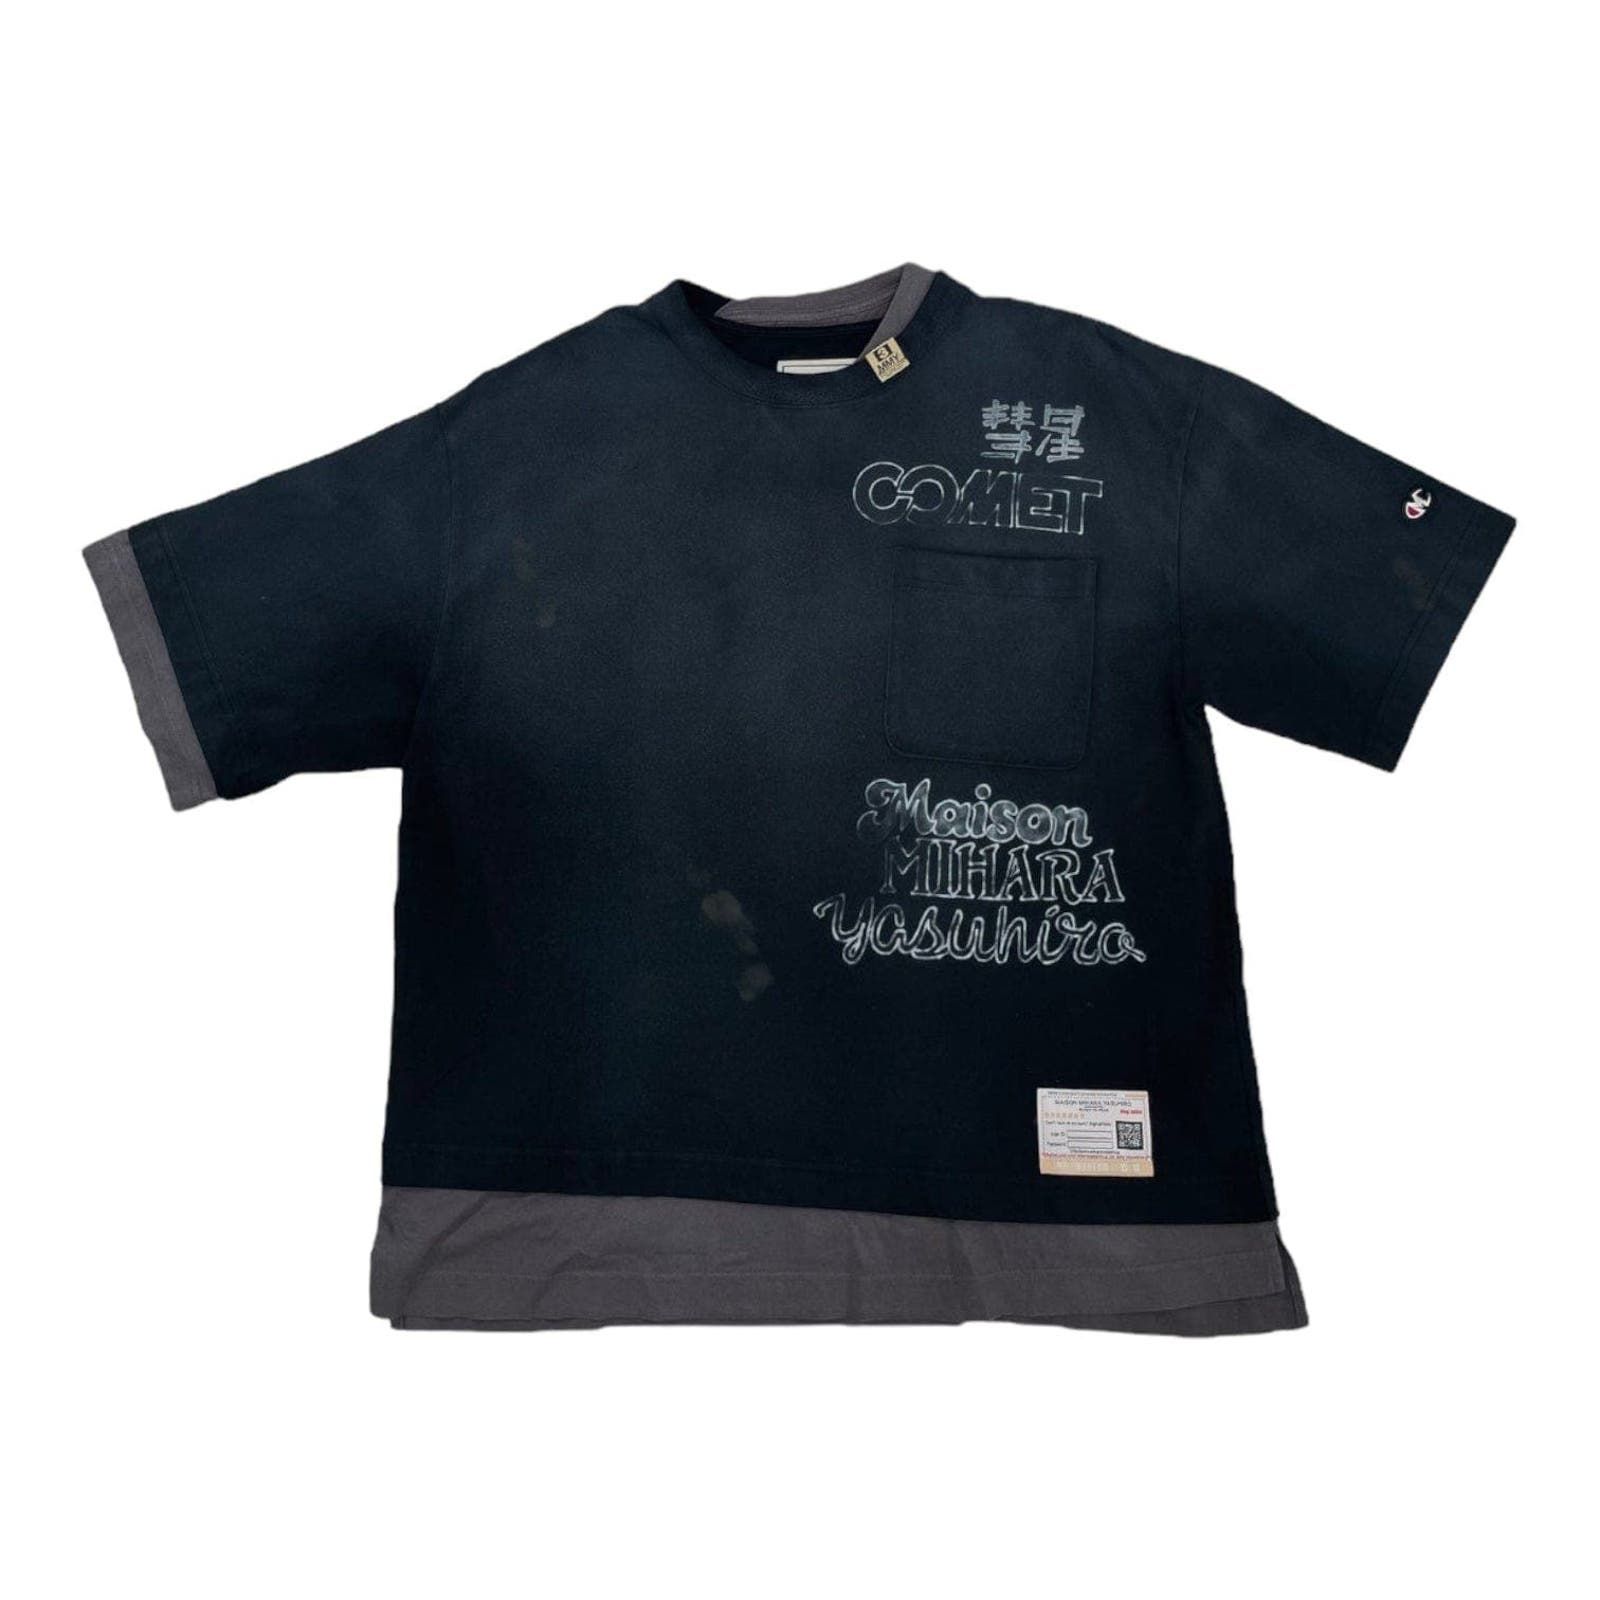 Maison Mihara Yasuhiro Comet Short Sleeve Tee Shirt